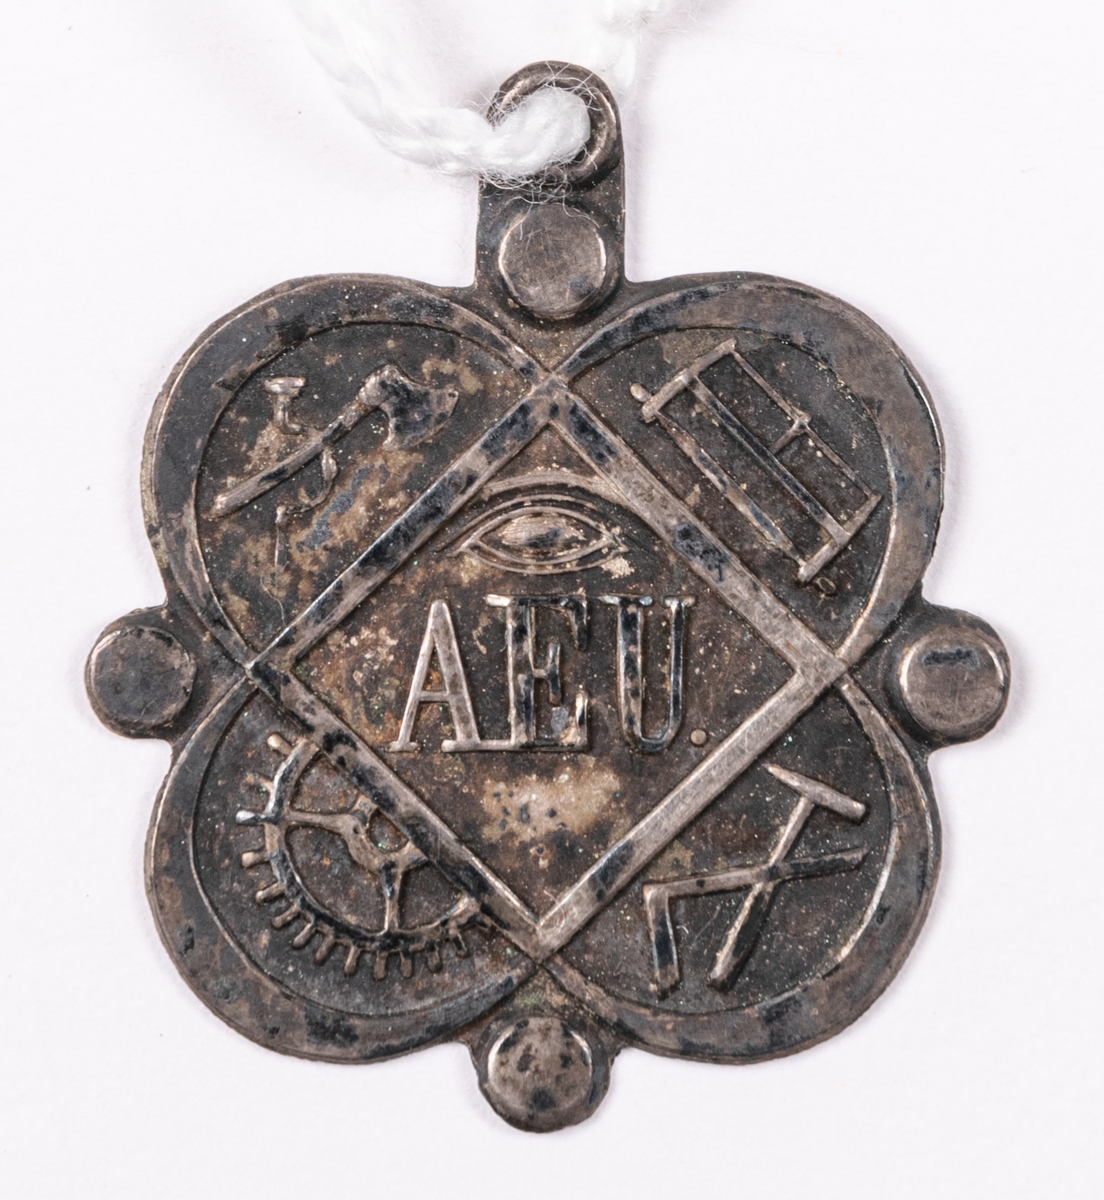 Föreningestecken i pressat silver, för okänt sällskap. Med emblem för olika hantverk, så som yxa, såg, hammare, vinkelhake och kugghjul, samt AEU.